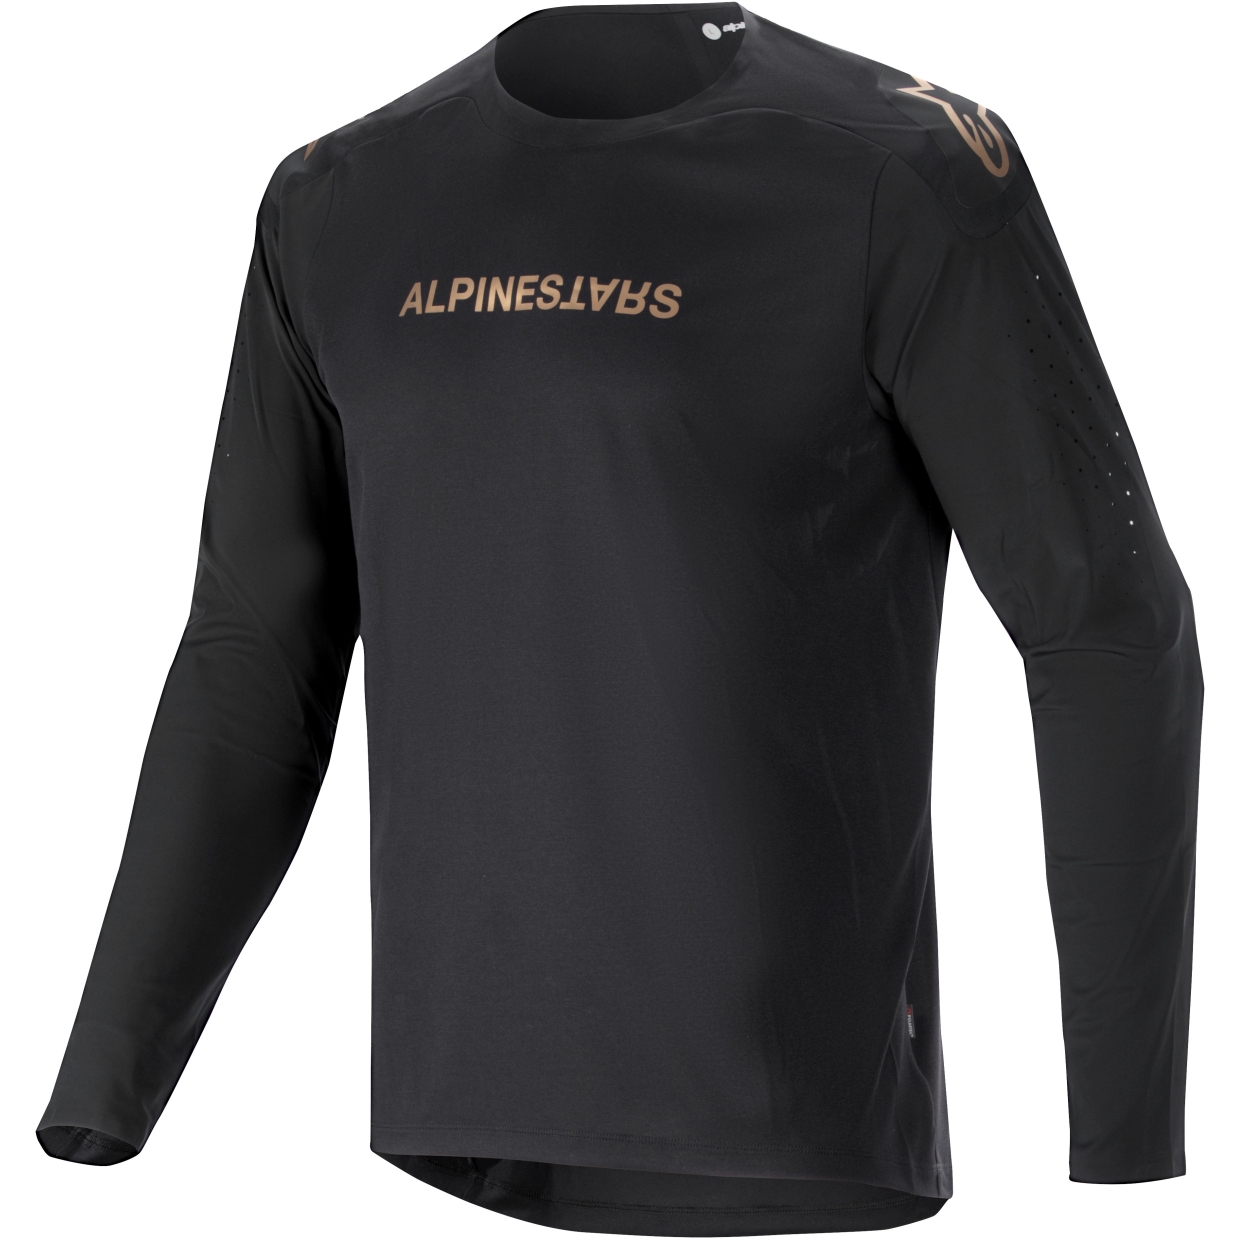 Productfoto van Alpinestars A-Aria Polartec Switch Fietsshirt met Lange Mouwen Heren - zwart